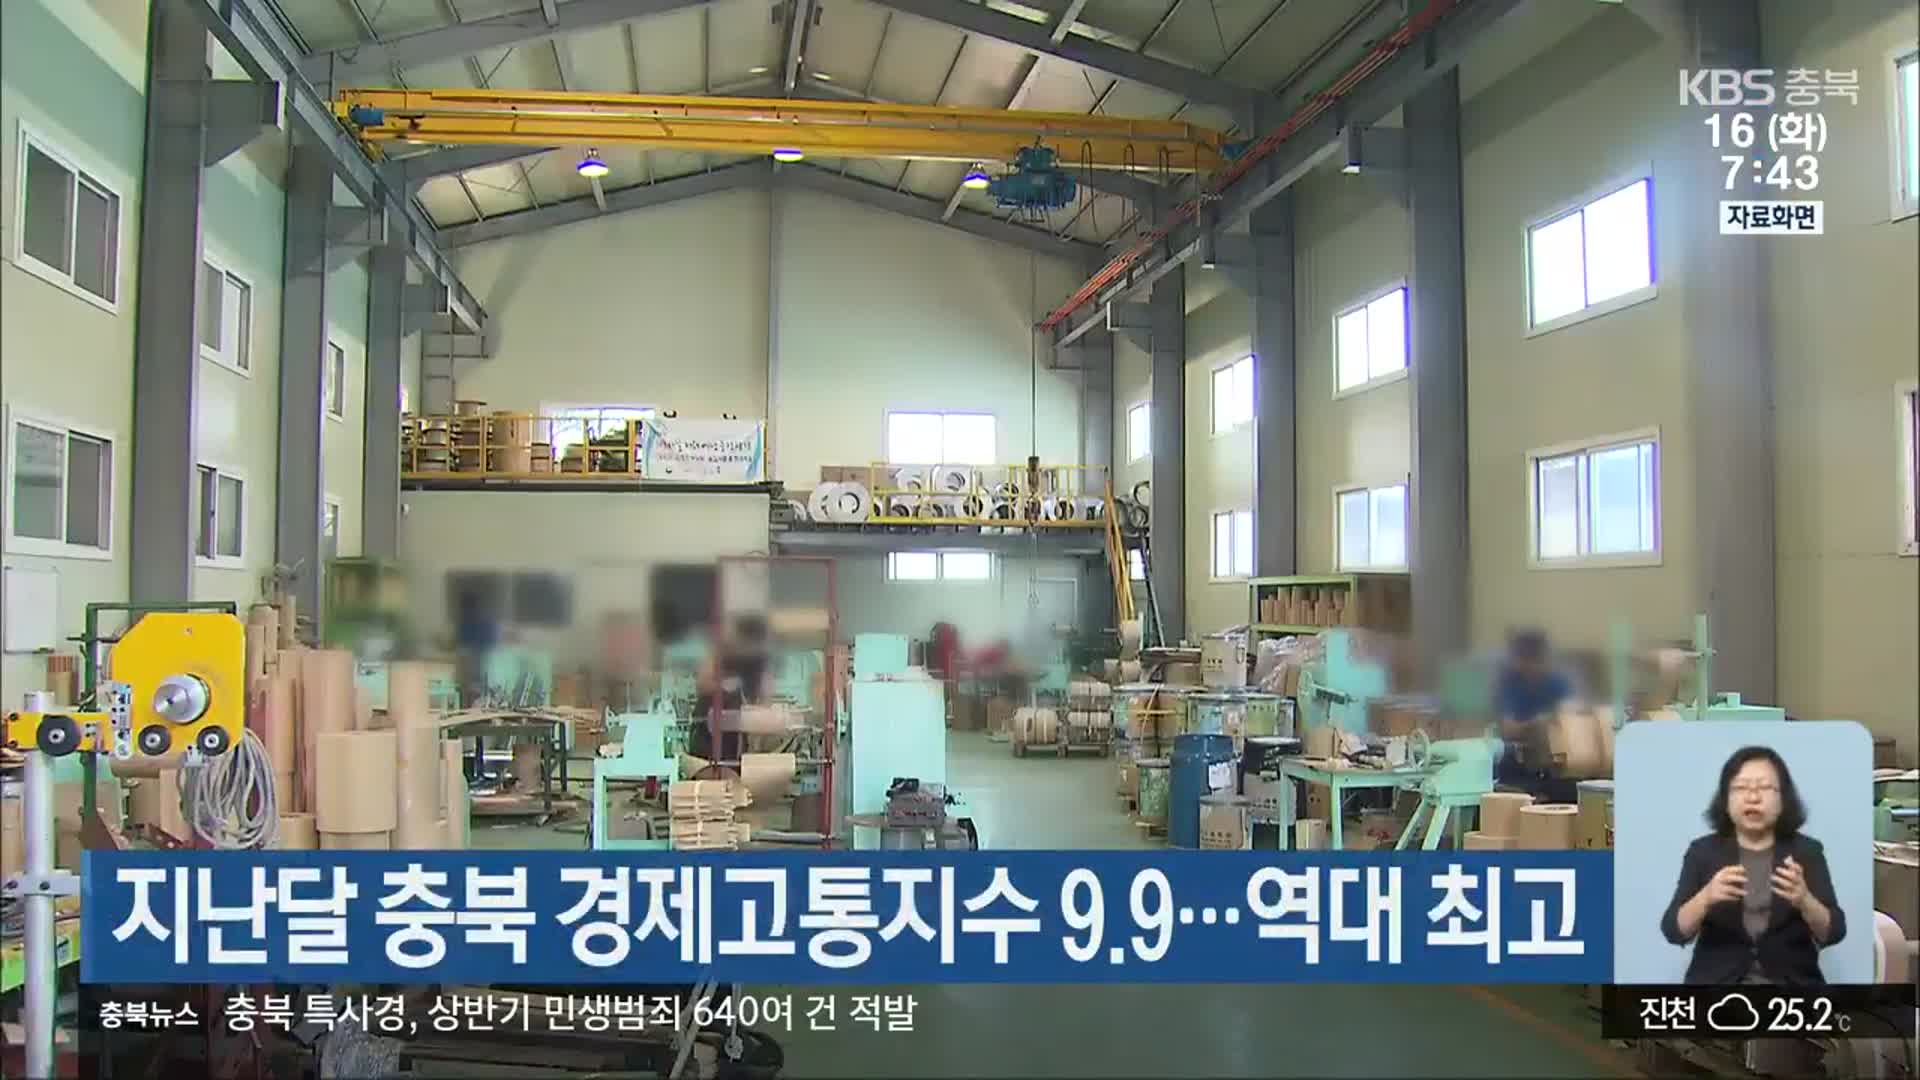 지난달 충북 경제고통지수 9.9…역대 최고